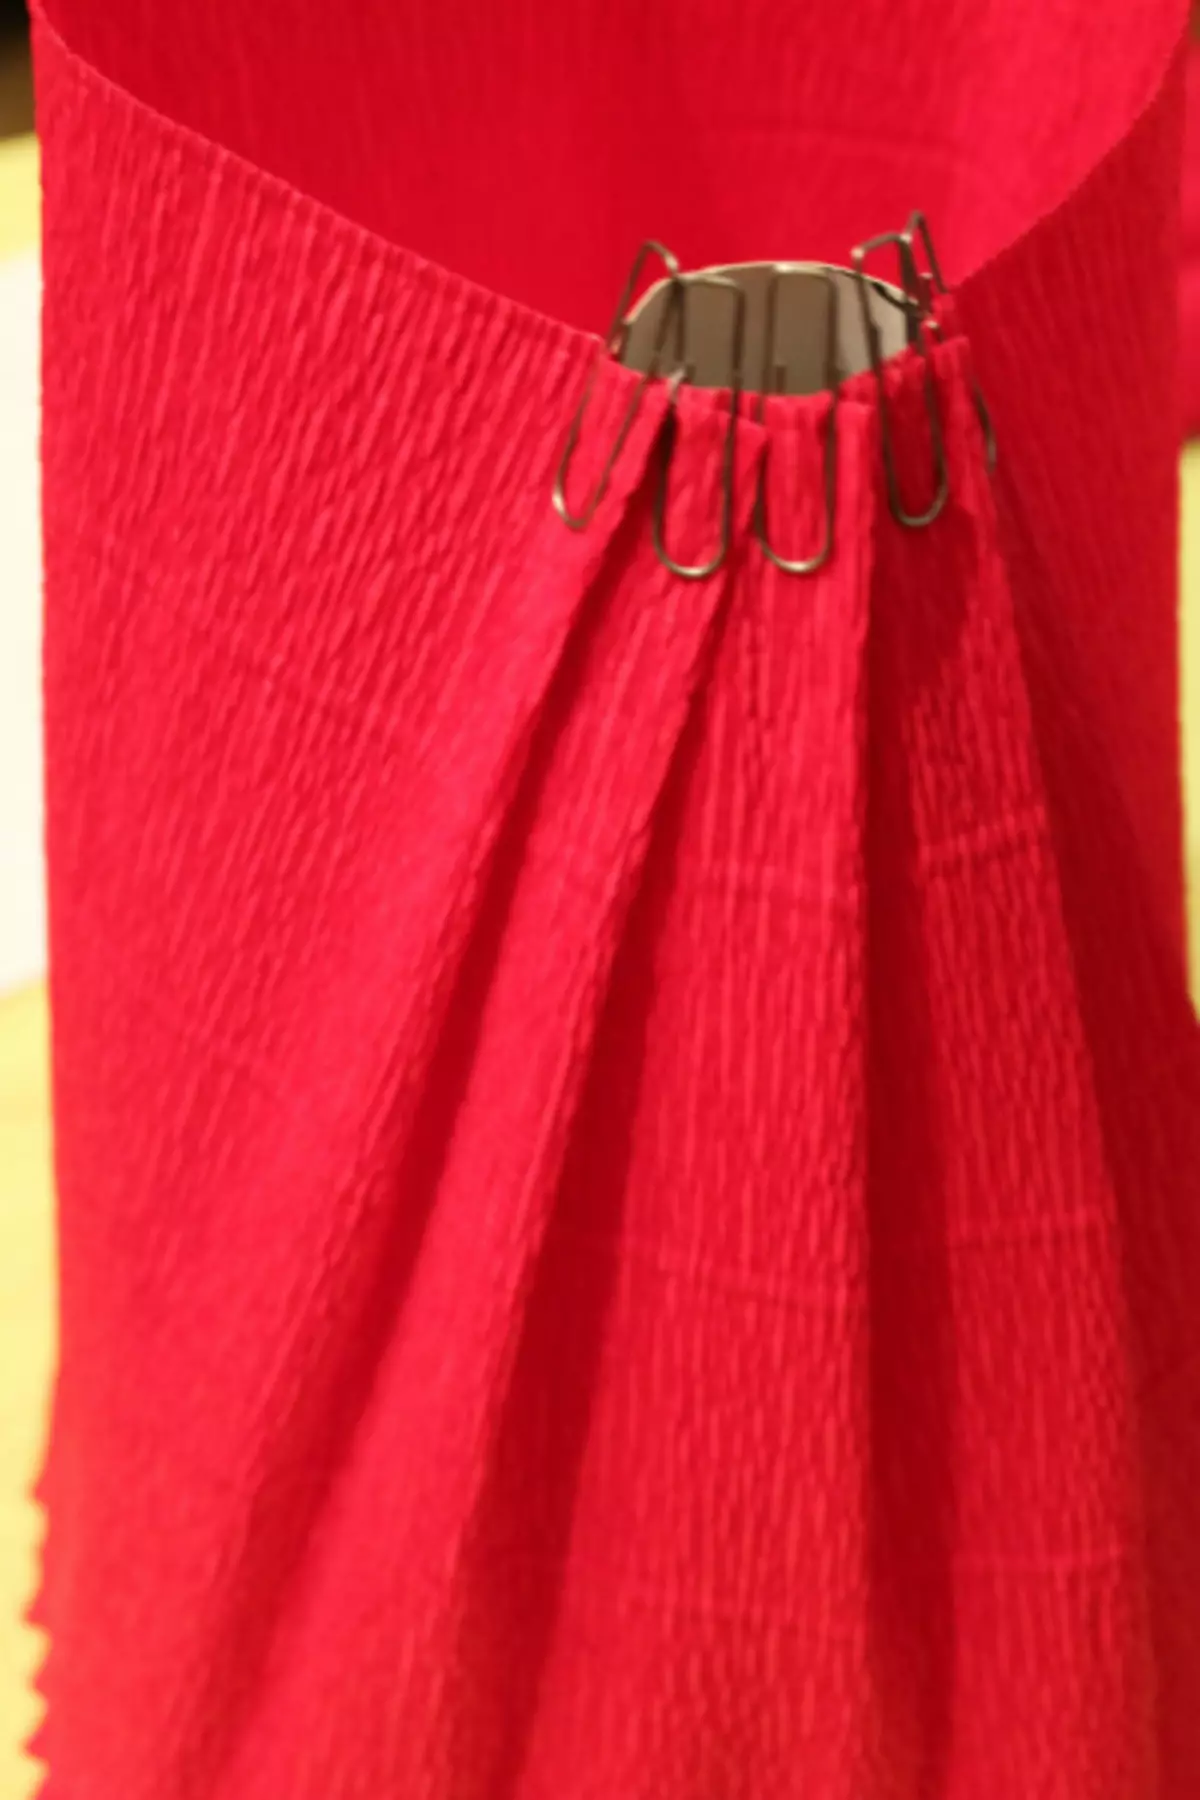 ಬಿಗಿನರ್ಸ್ ಸಿಹಿ ವಿನ್ಯಾಸ: ವೀಡಿಯೊದೊಂದಿಗೆ ಸಿಹಿತಿಂಡಿಗಳು ಮಾಸ್ಟರ್ ವರ್ಗ ಪುಷ್ಪಗುಚ್ಛ